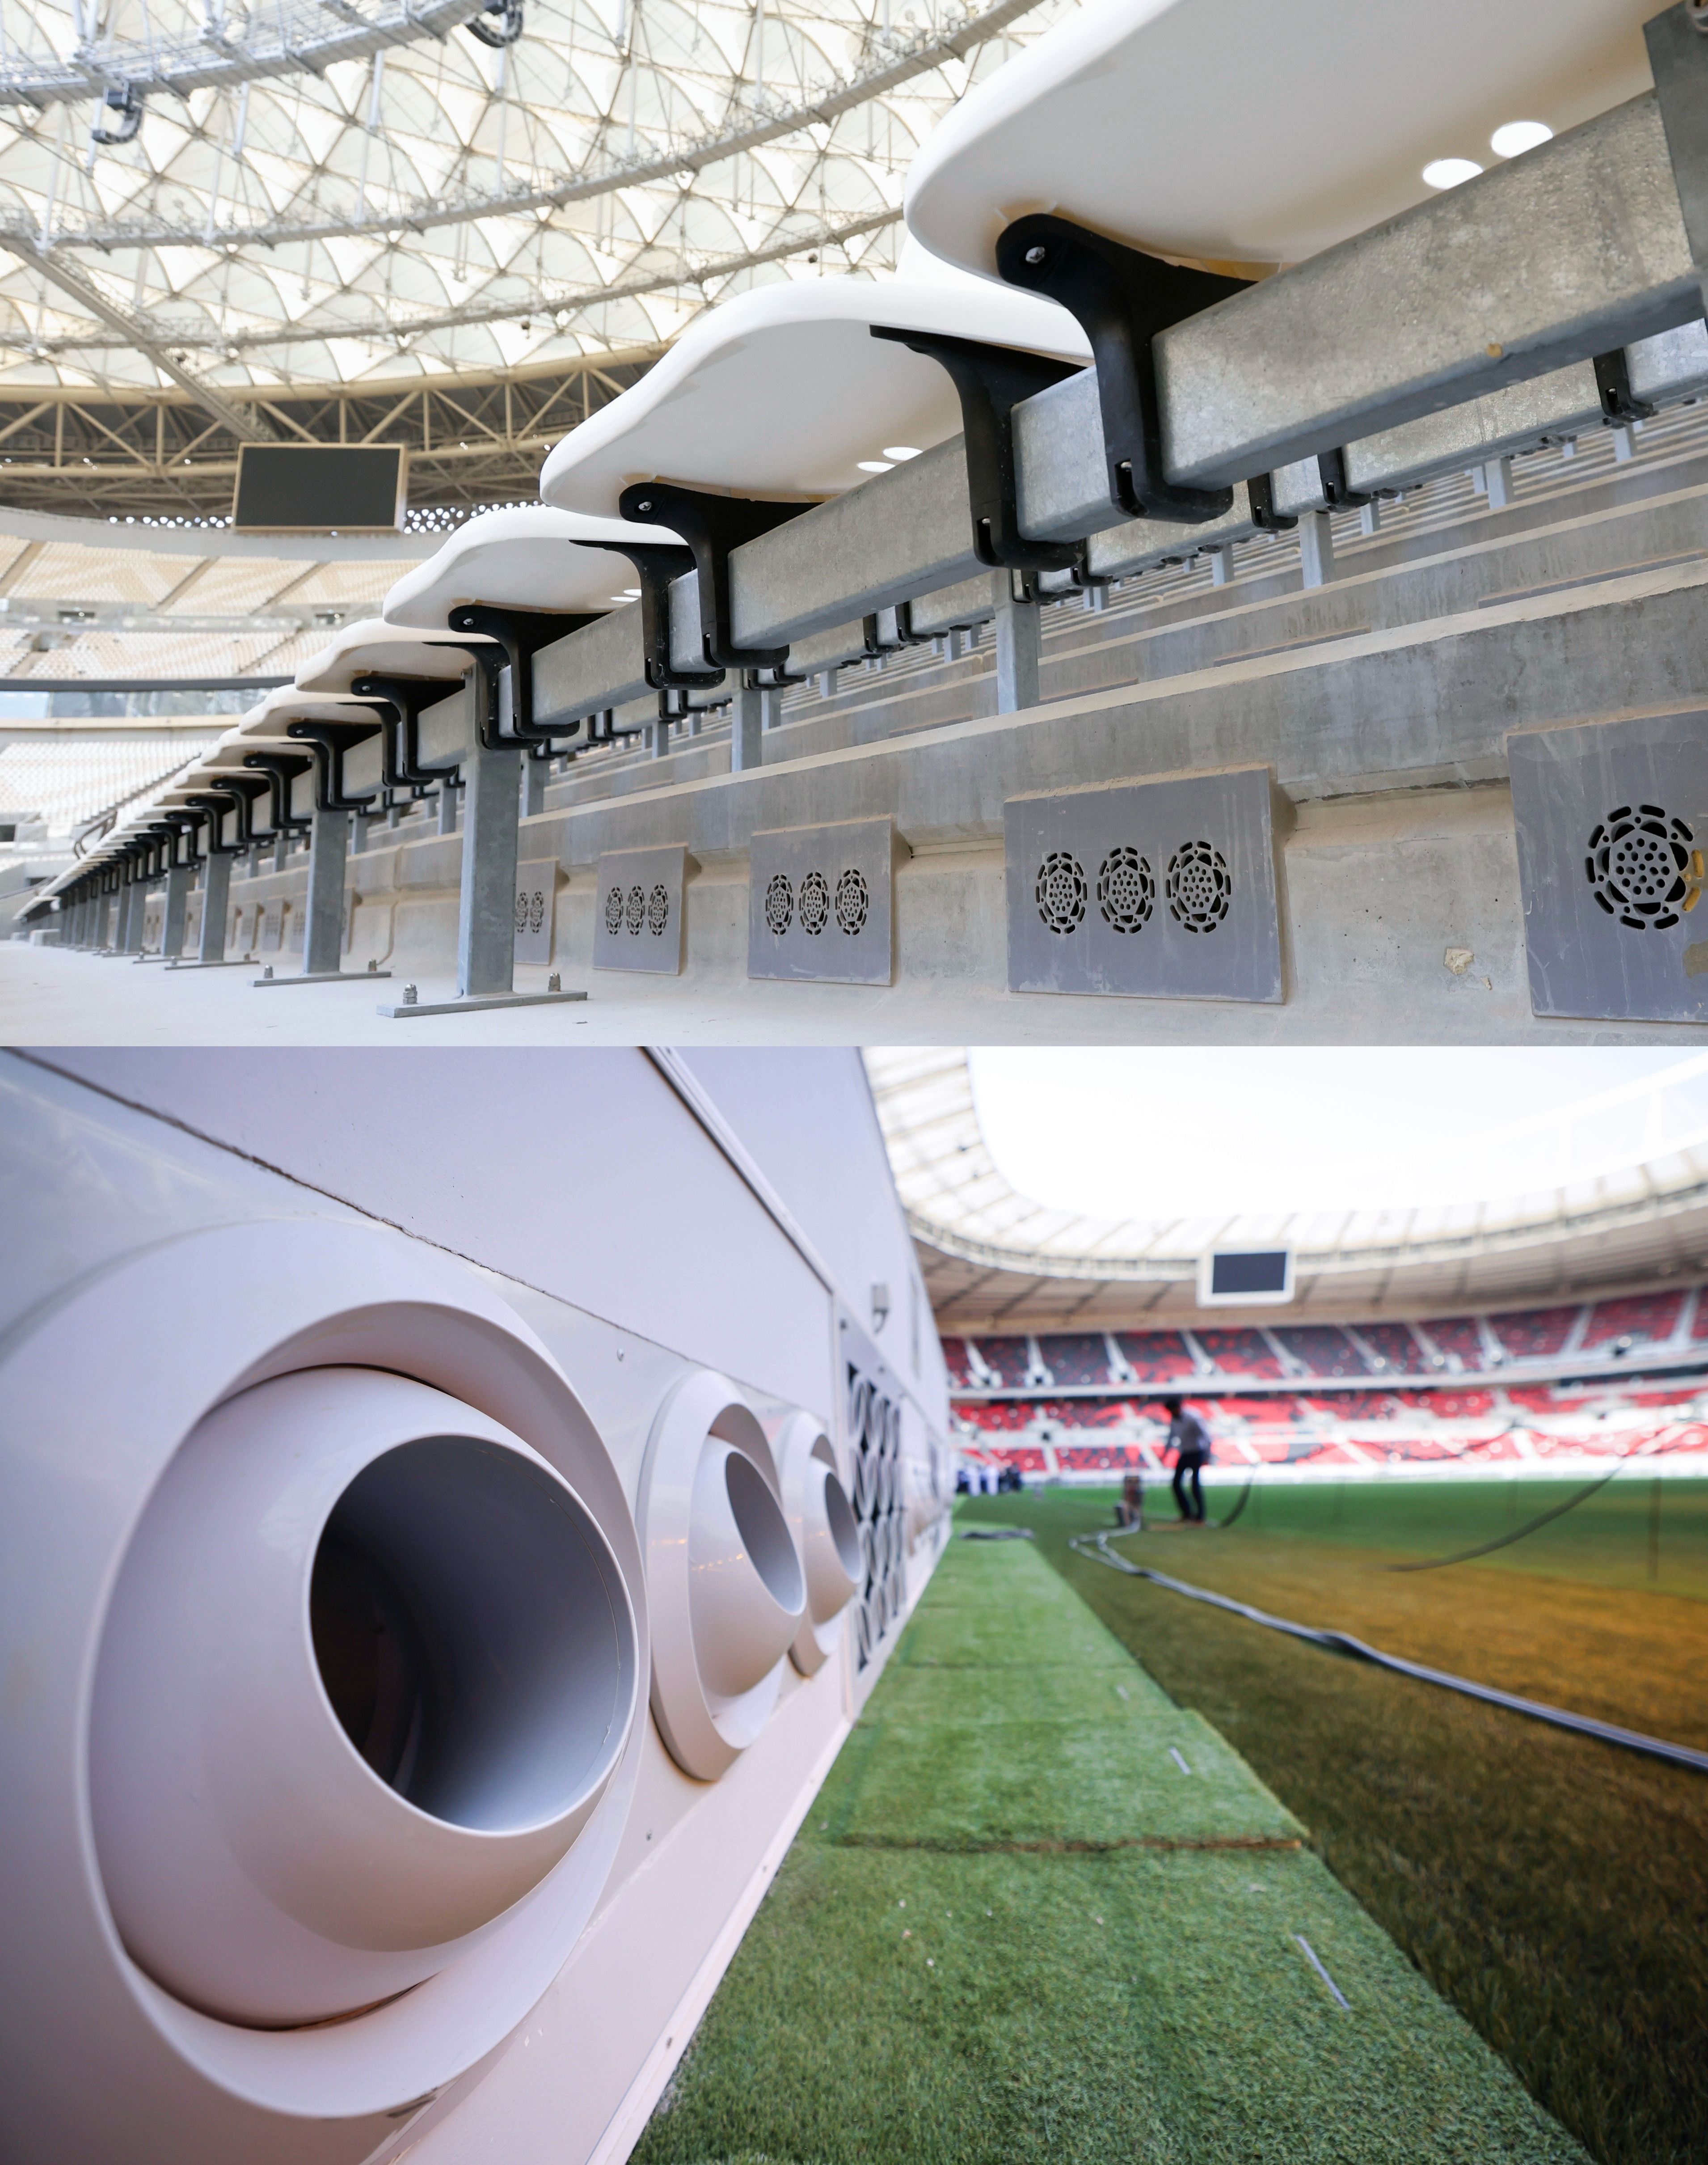 Снимките преди турнира показват решетки под седалките на стадион Lusail (отгоре) и дюзи отстрани на терена на стадион Ahmad Bin Ali (отдолу).  Те се използват за вдухване на охладен въздух в арените в Катар.  (Киодо/AP; Кристиан Харизиус—picture-alliance/dpa/AP)